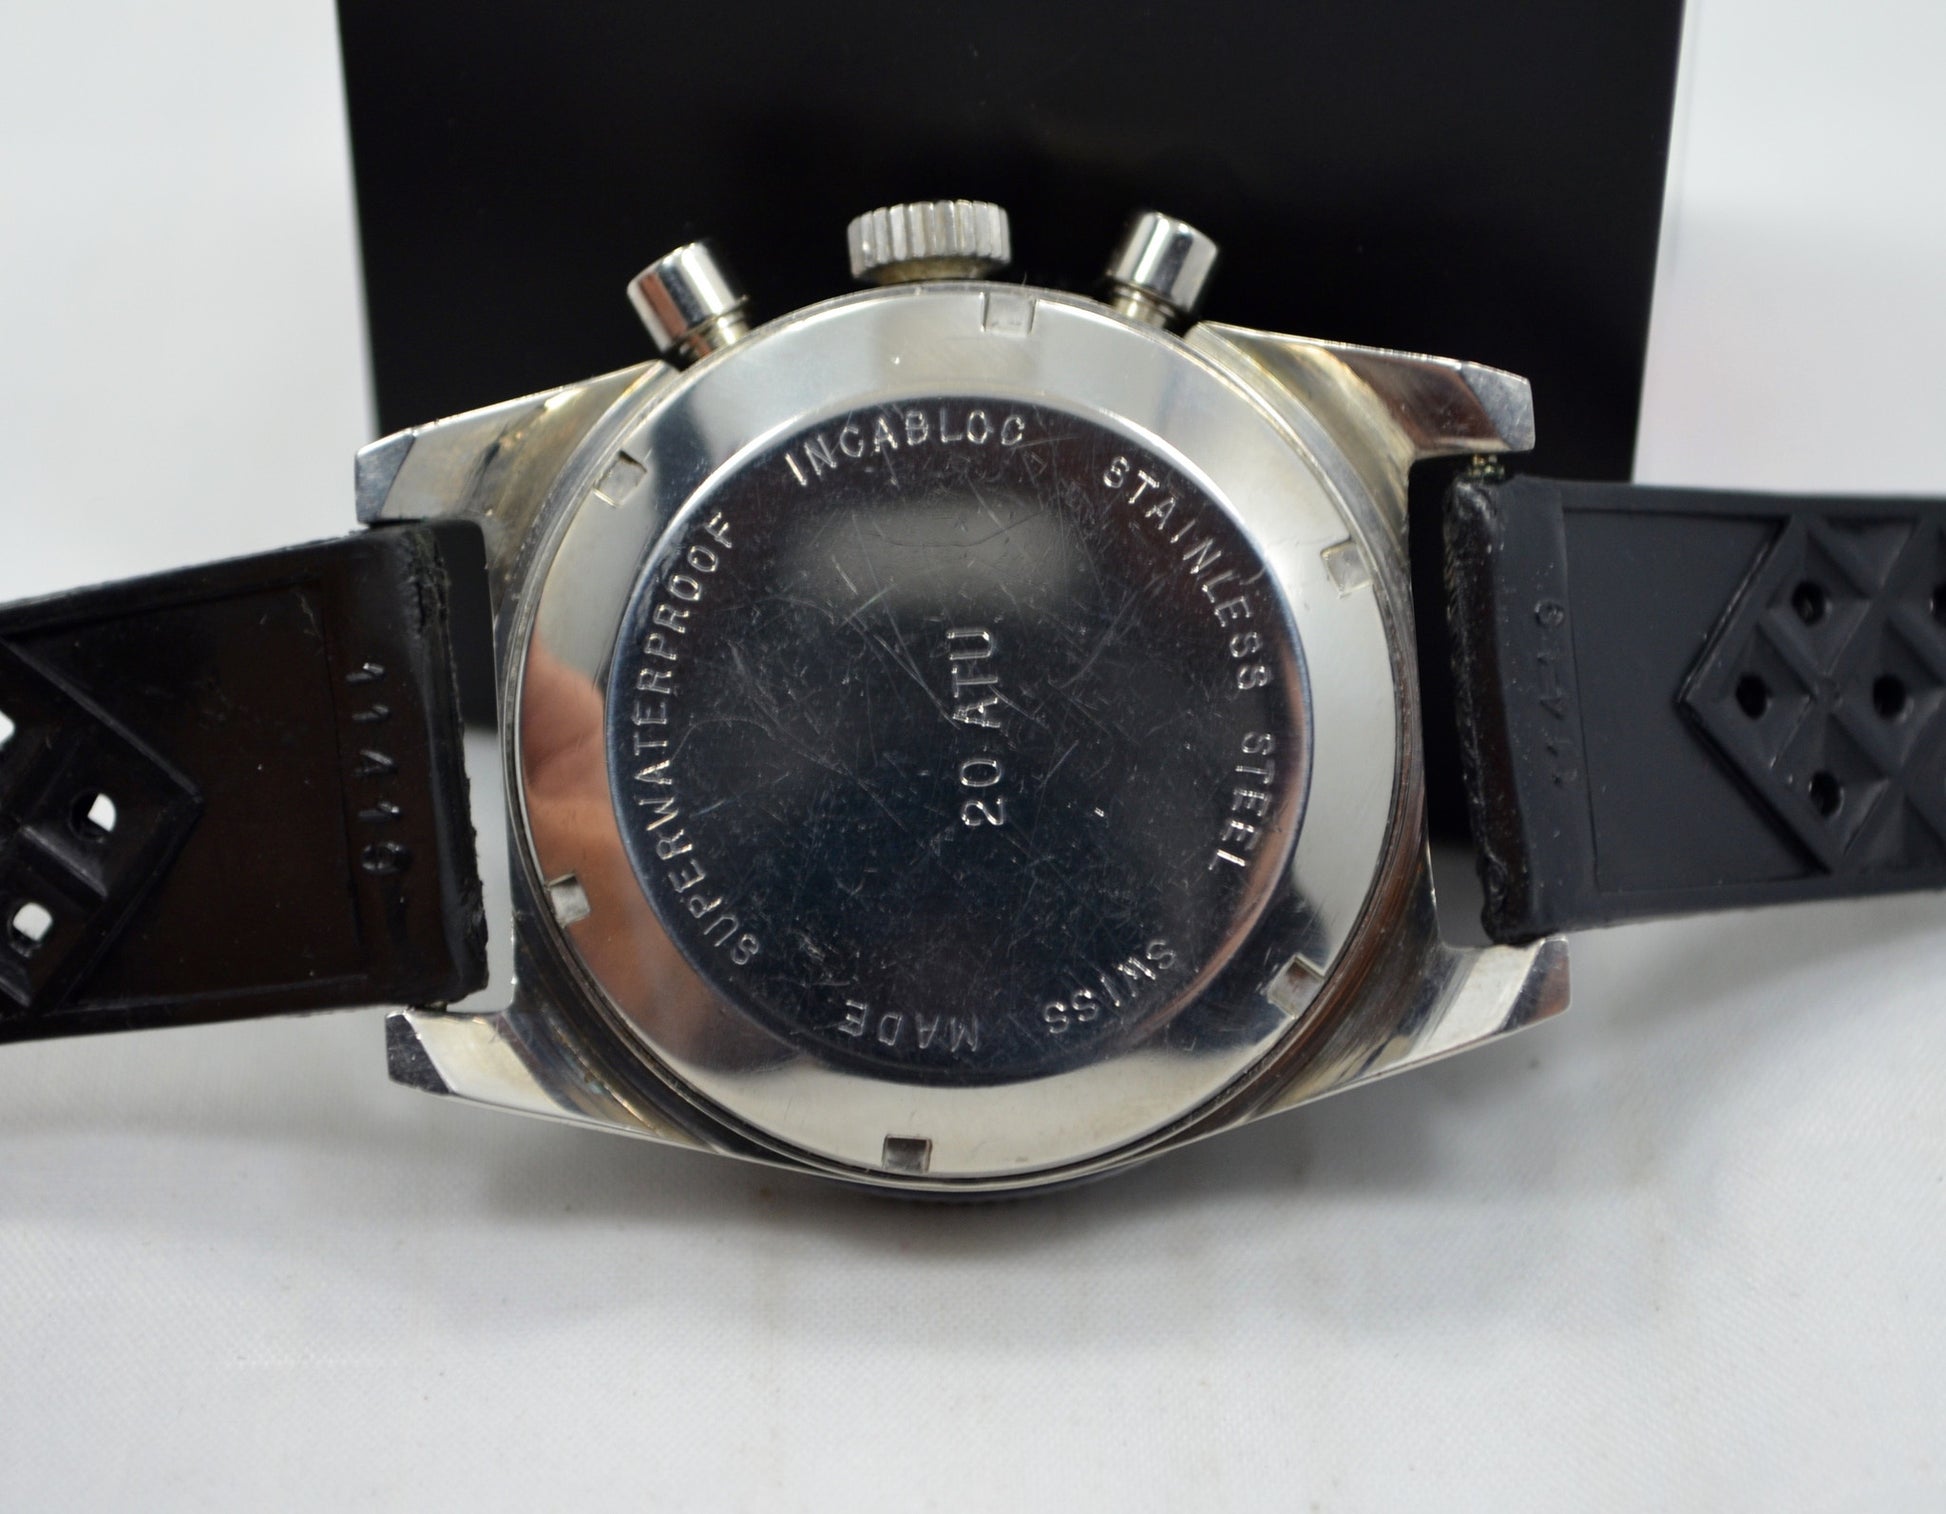 Vintage Mondaine Incabloc 200 Steel Chronograph Valjoux 7784 TROPICAL Watch - Hashtag Watch Company